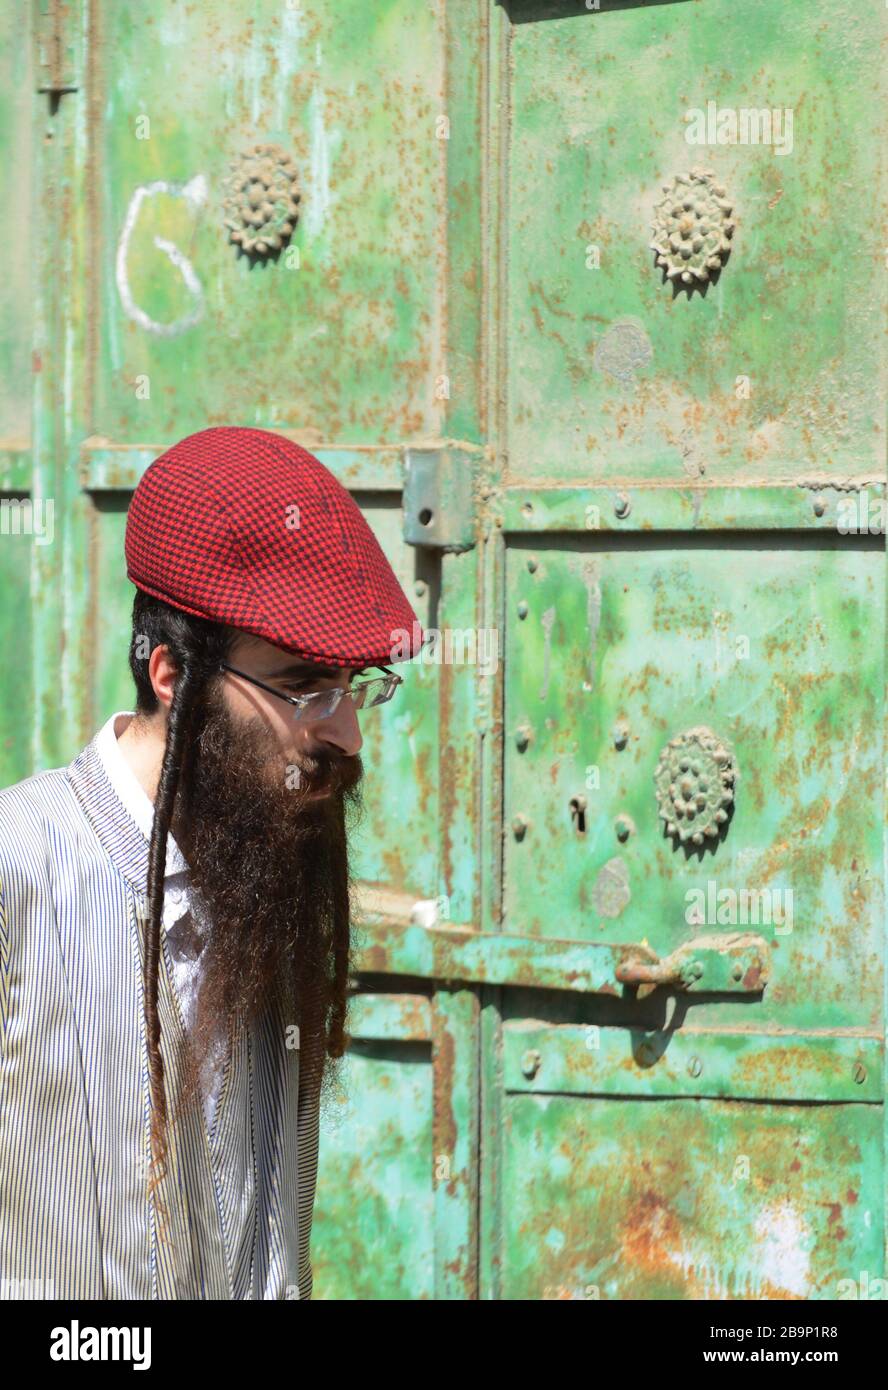 Un uomo ebraico che indossa un colorato cappuccio rosso. Foto Stock